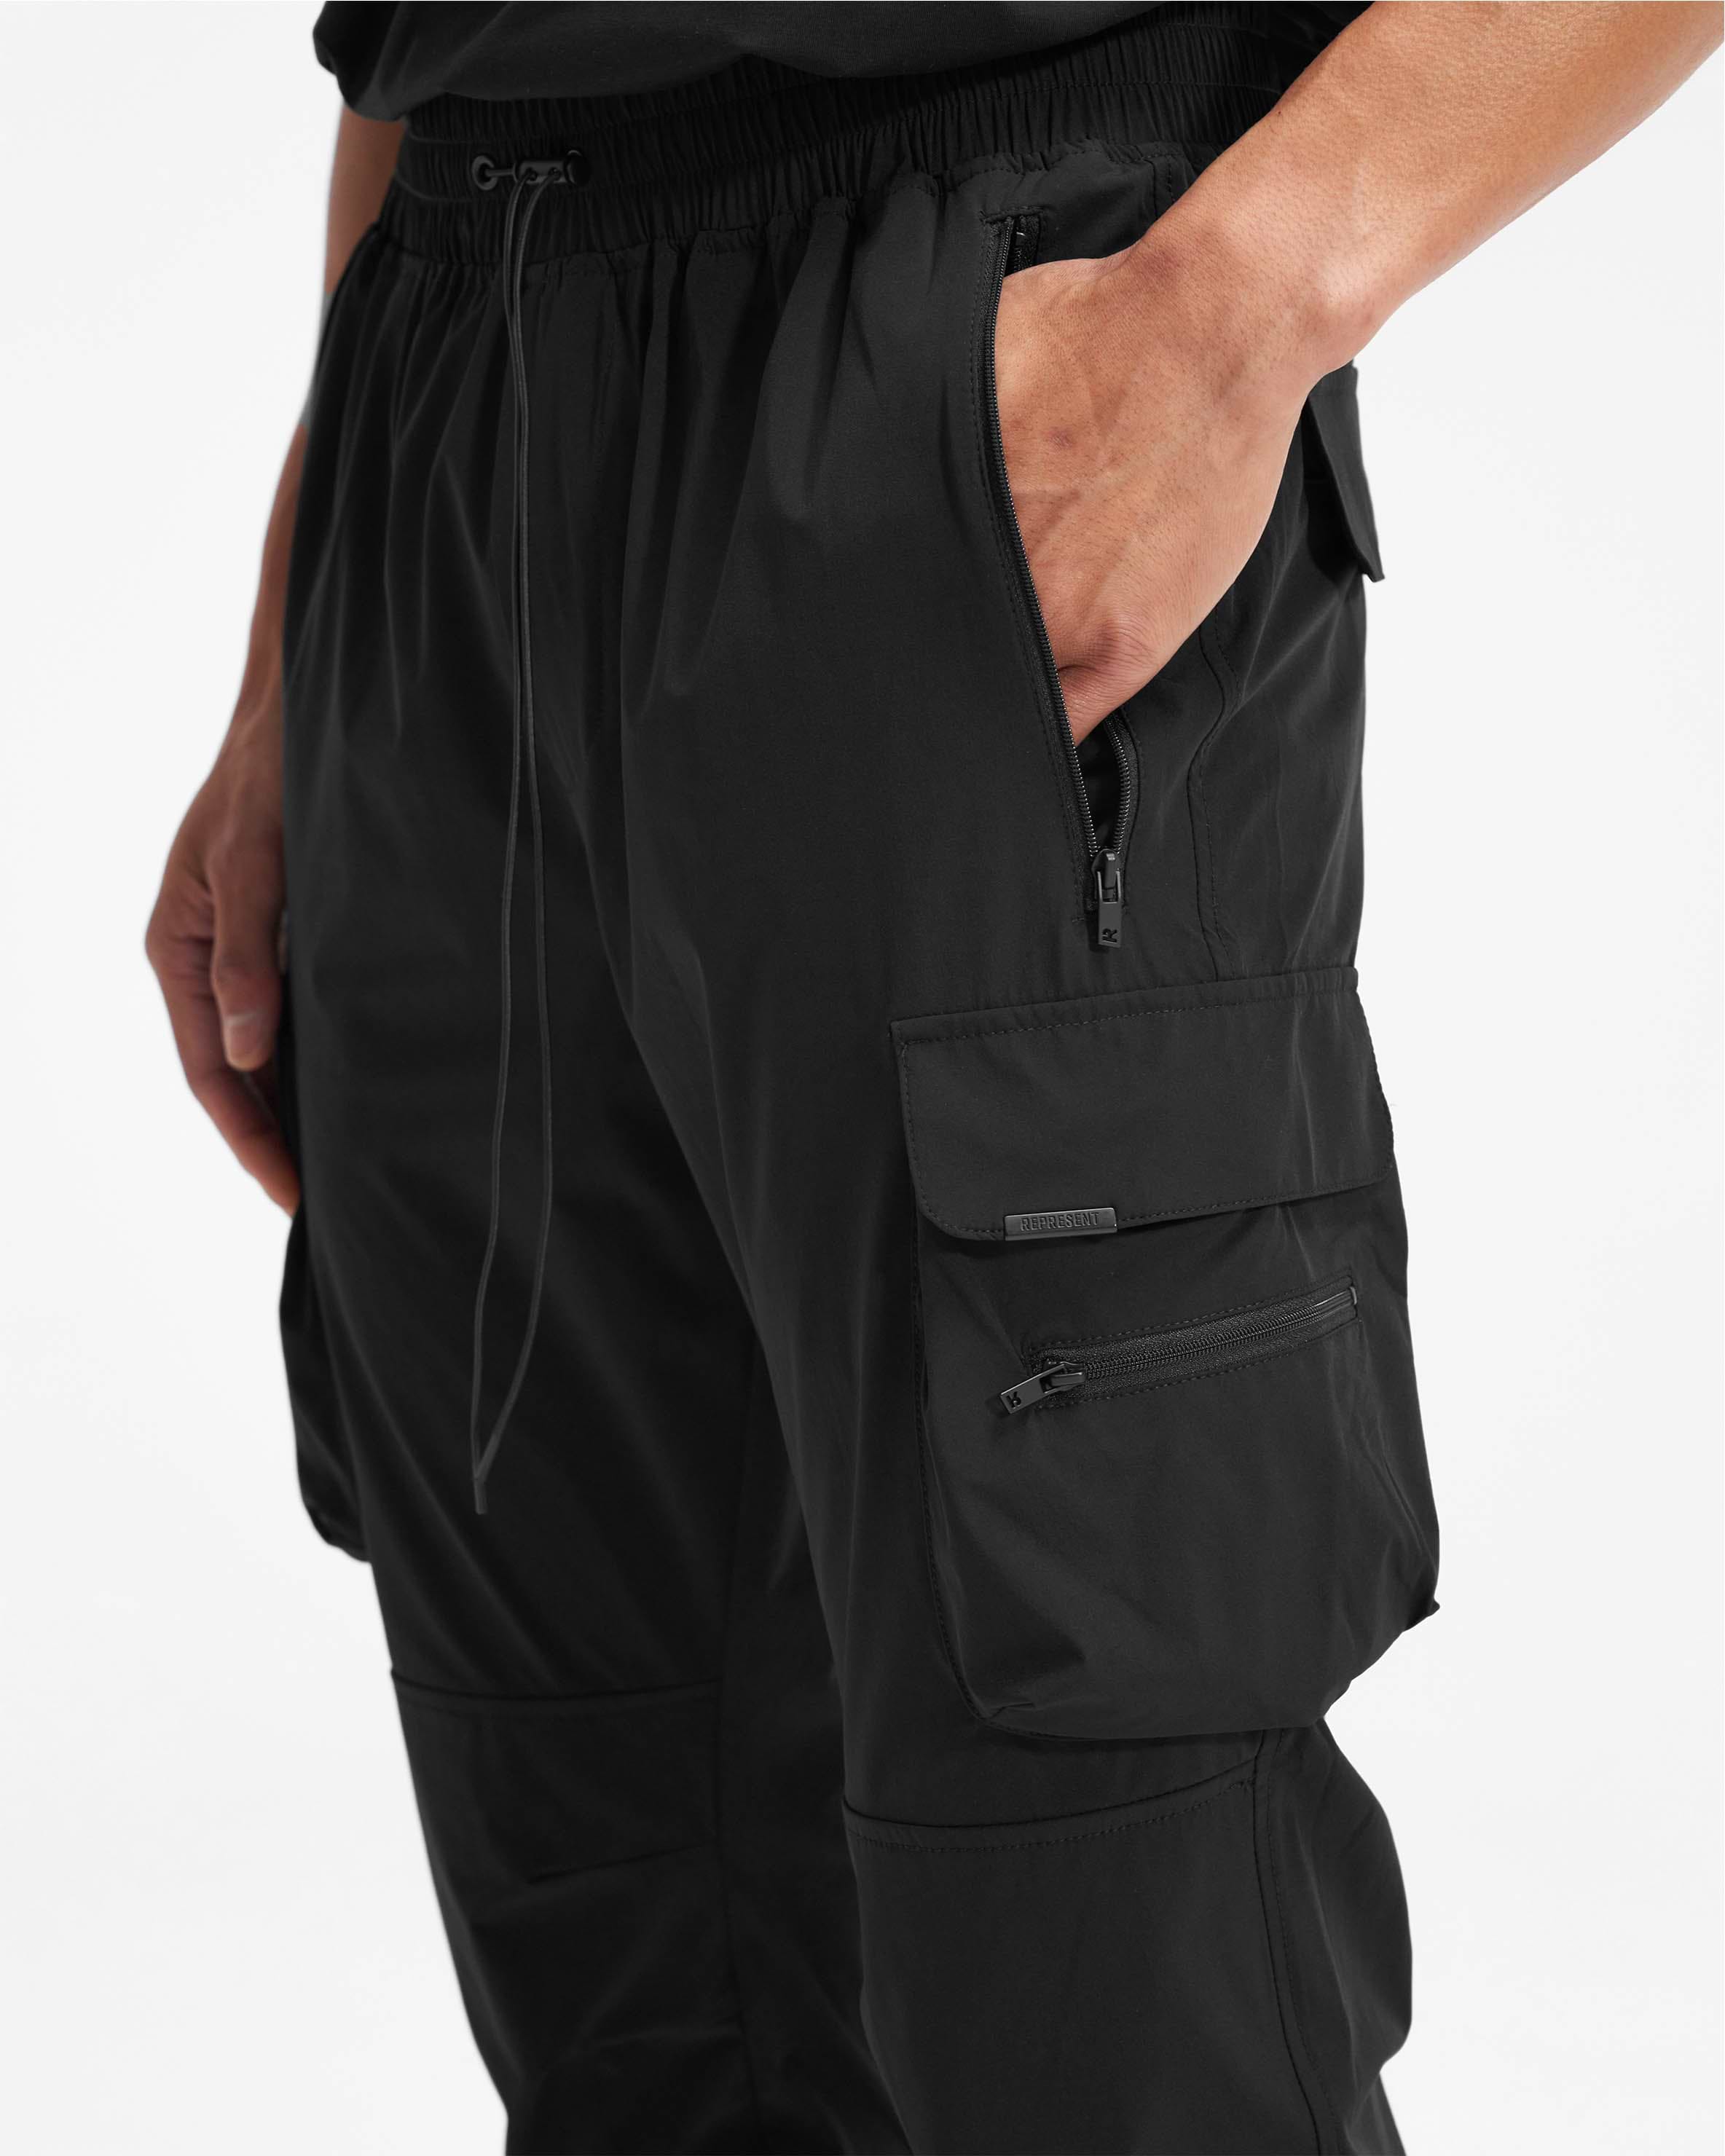 Skinny Fit Nylon cargo trousers - Beige - Men | H&M IN